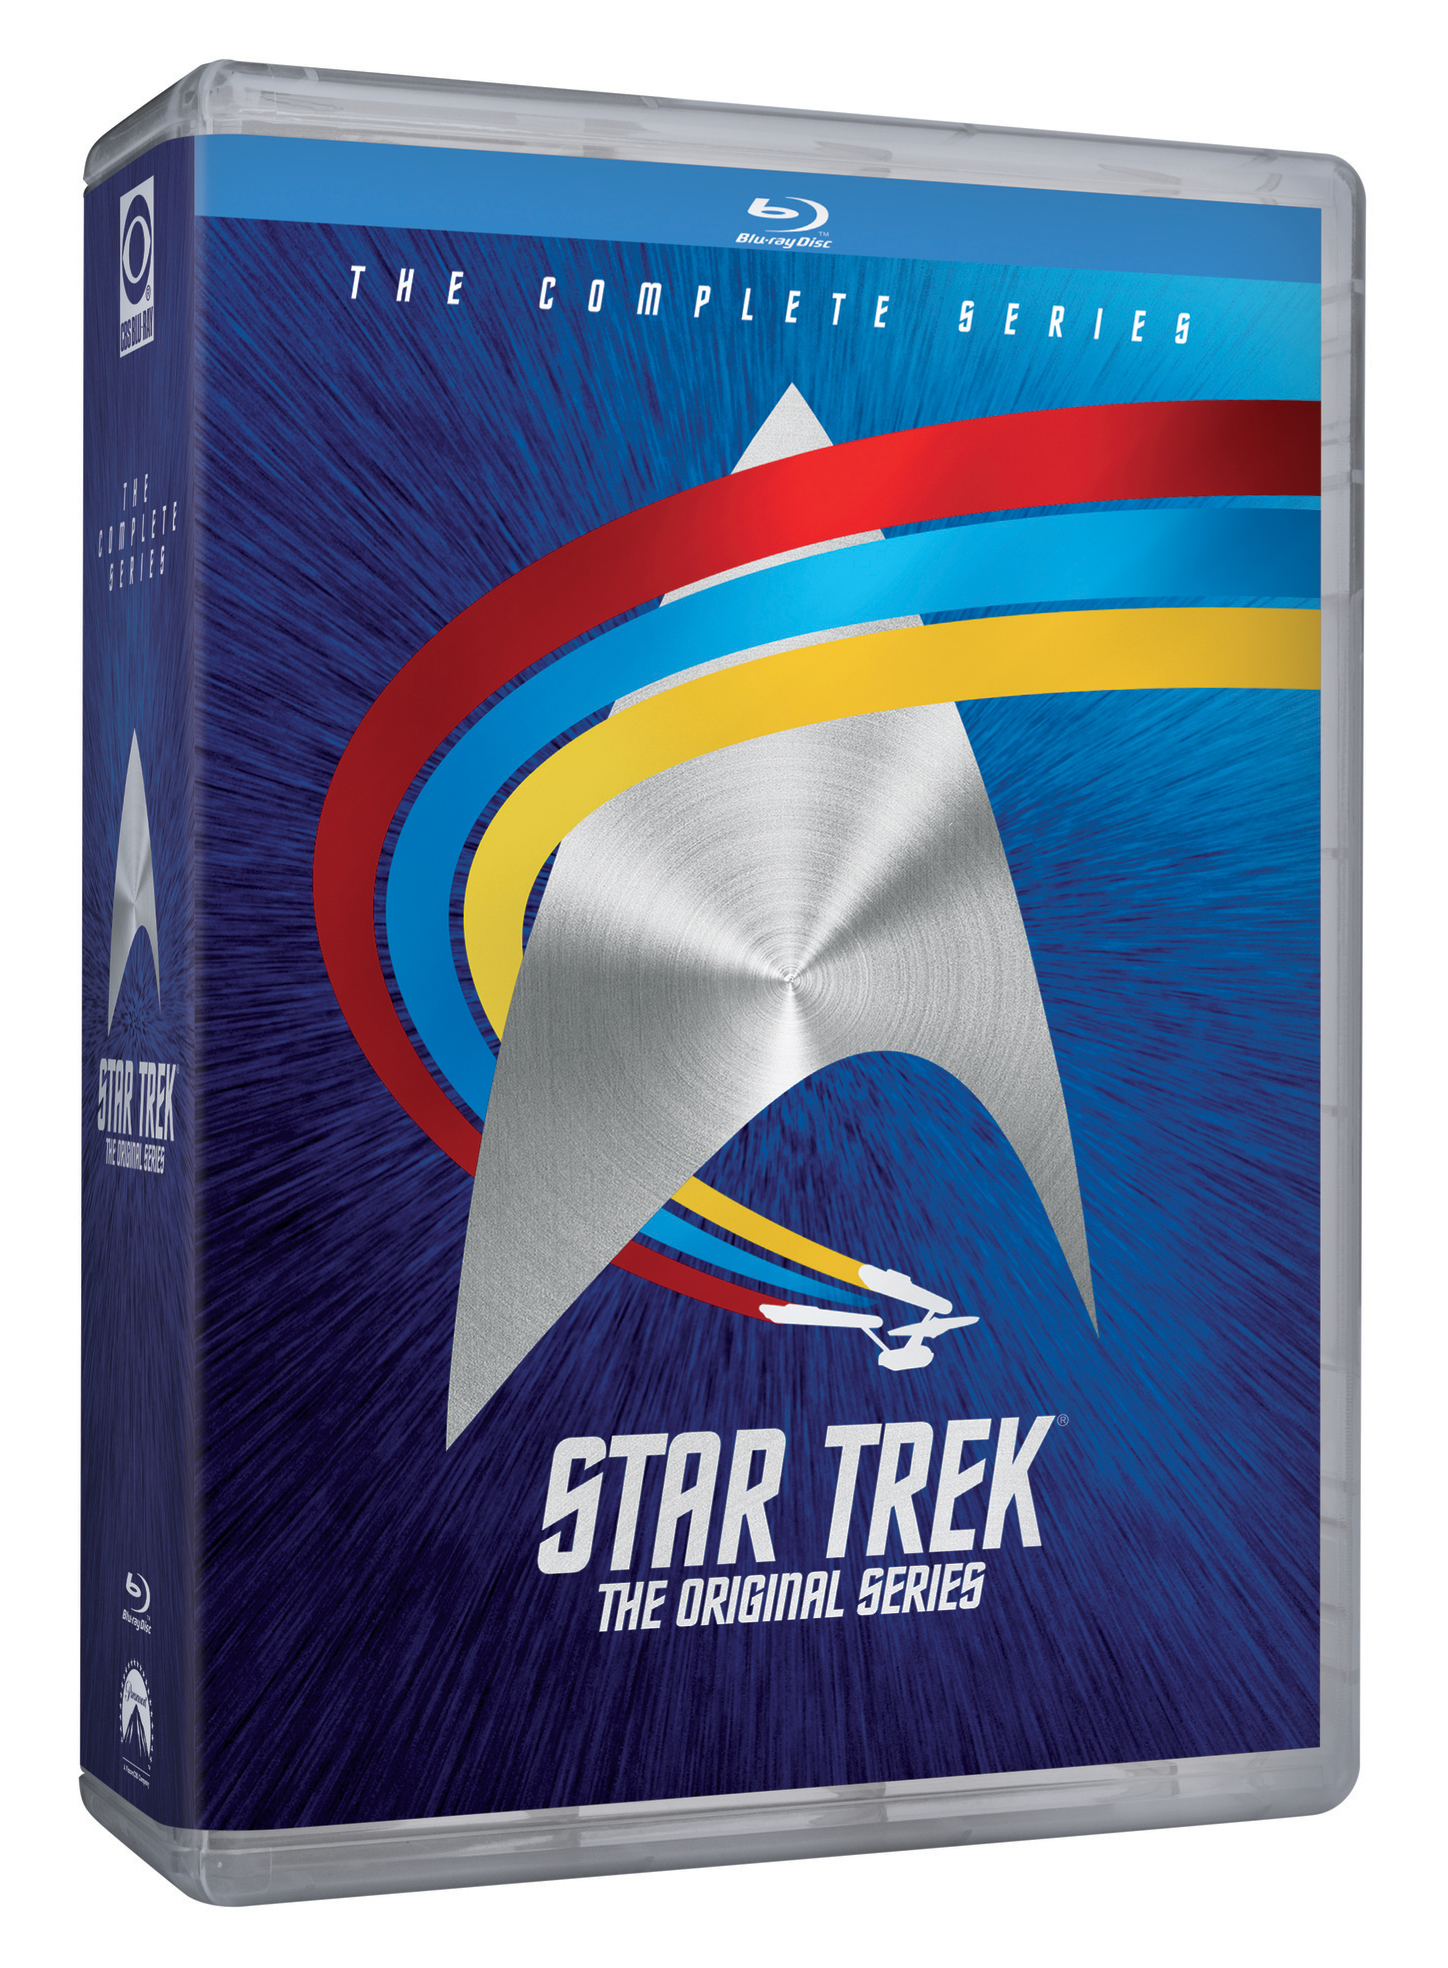 Star Trek The Original Series The Complete Series Blu Ray Best Buy